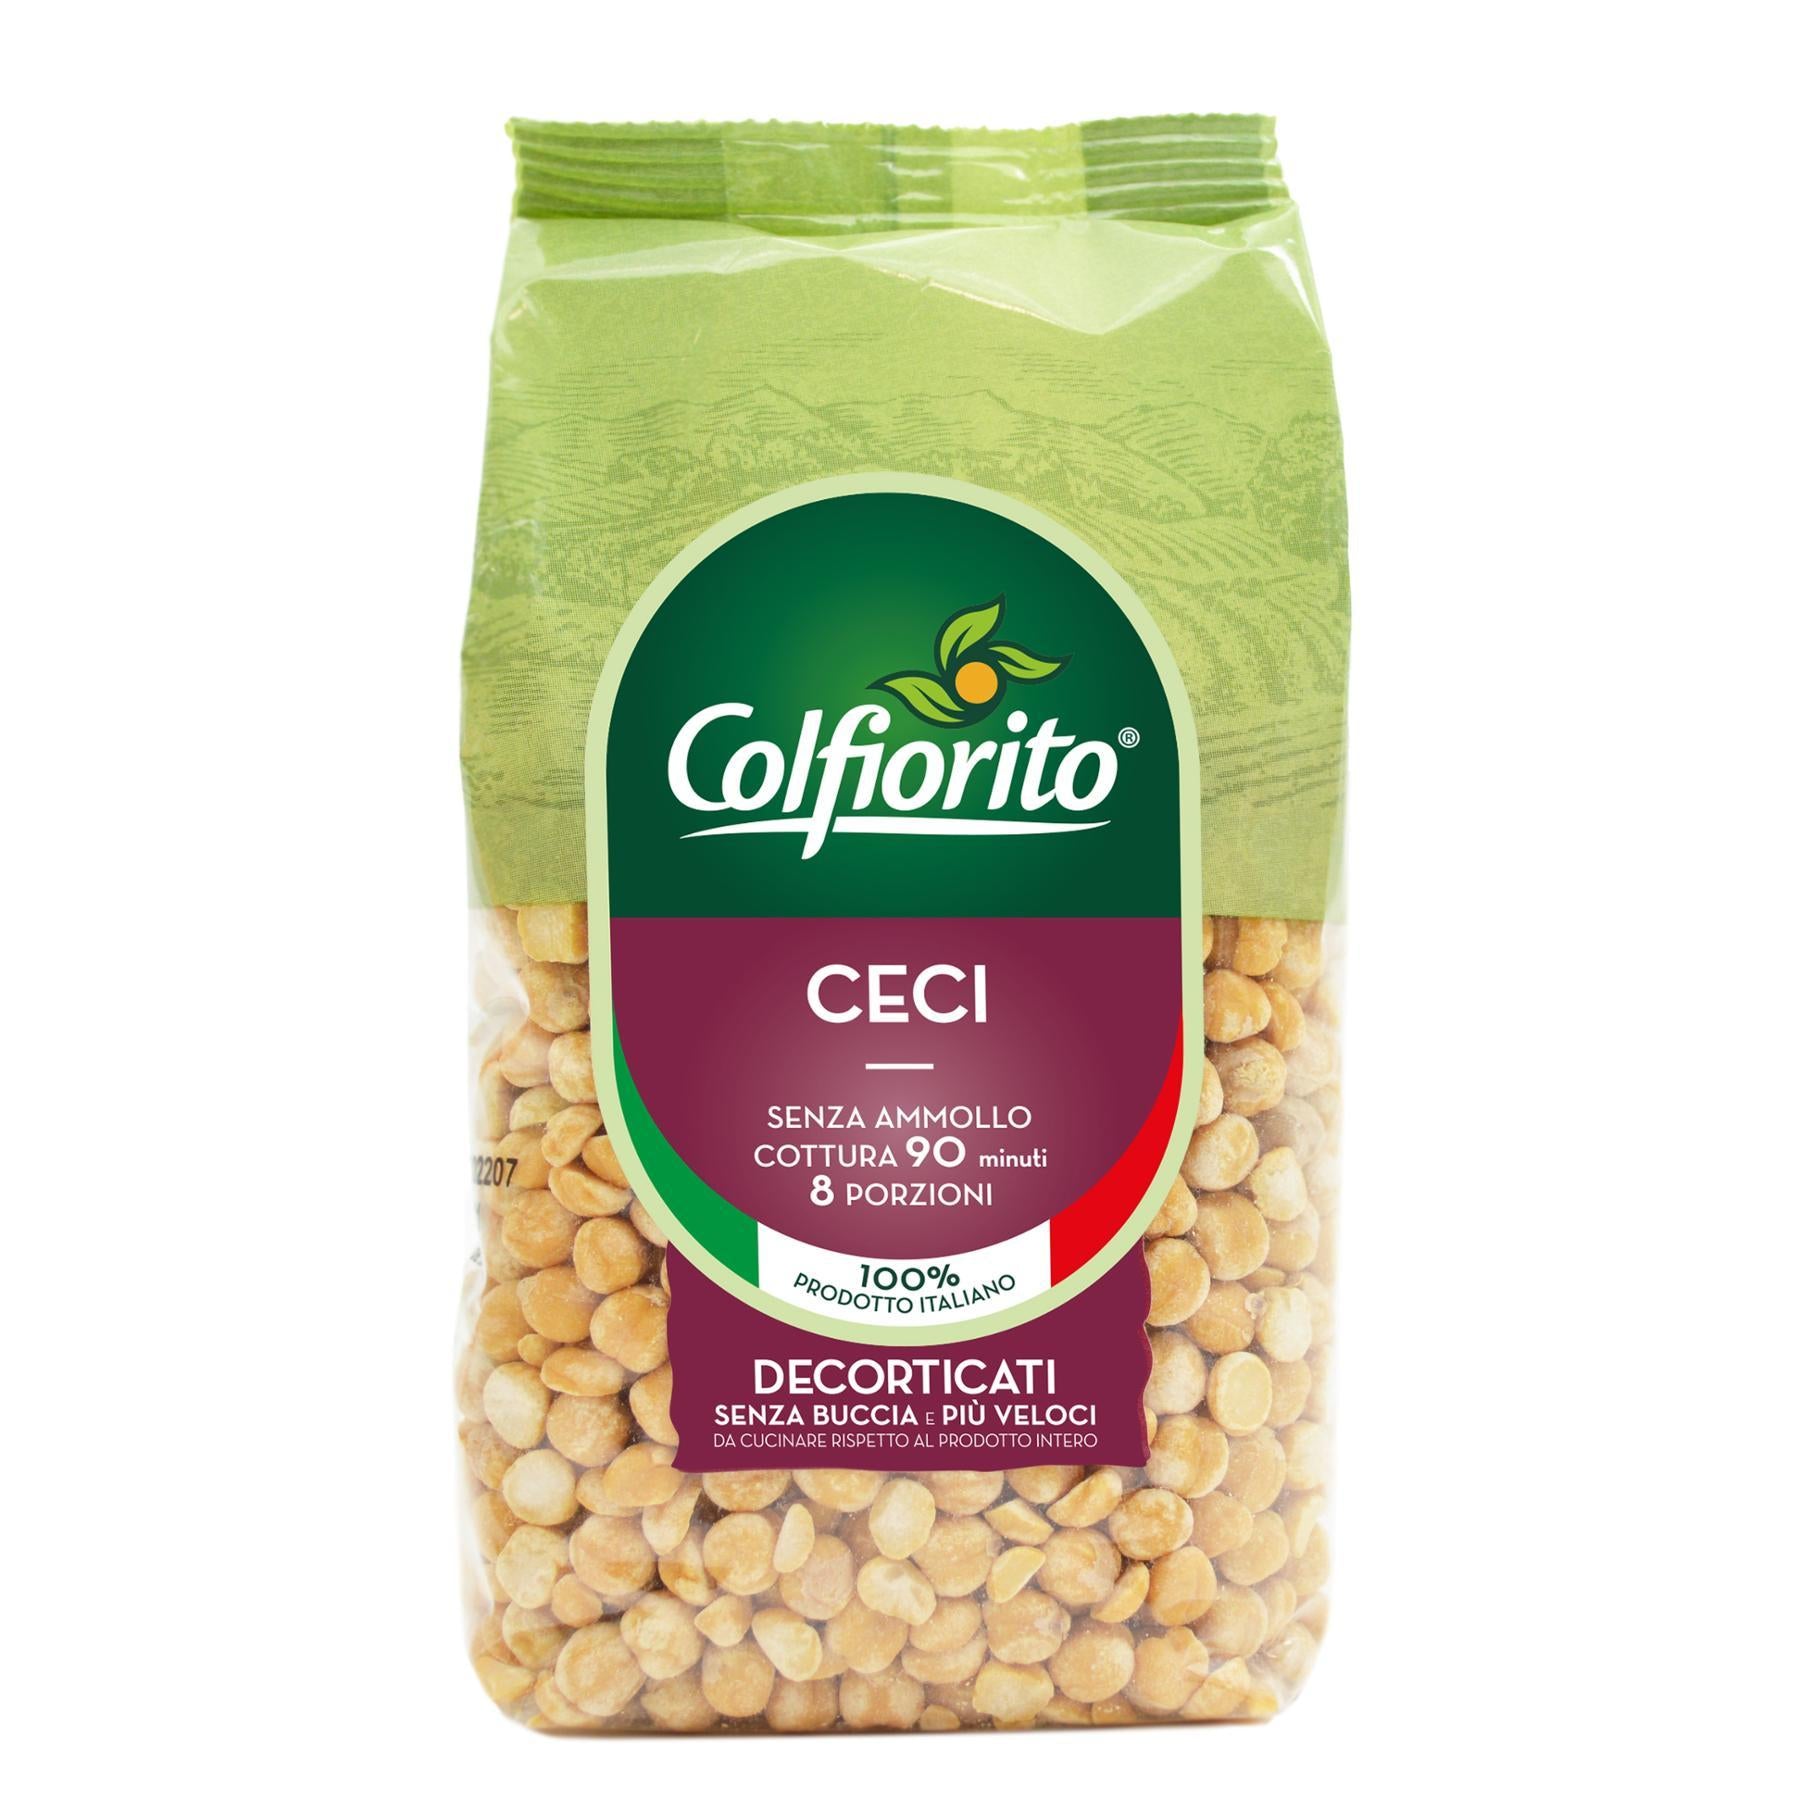 Colfiorito - Ceci Decorticati 100% Italiani